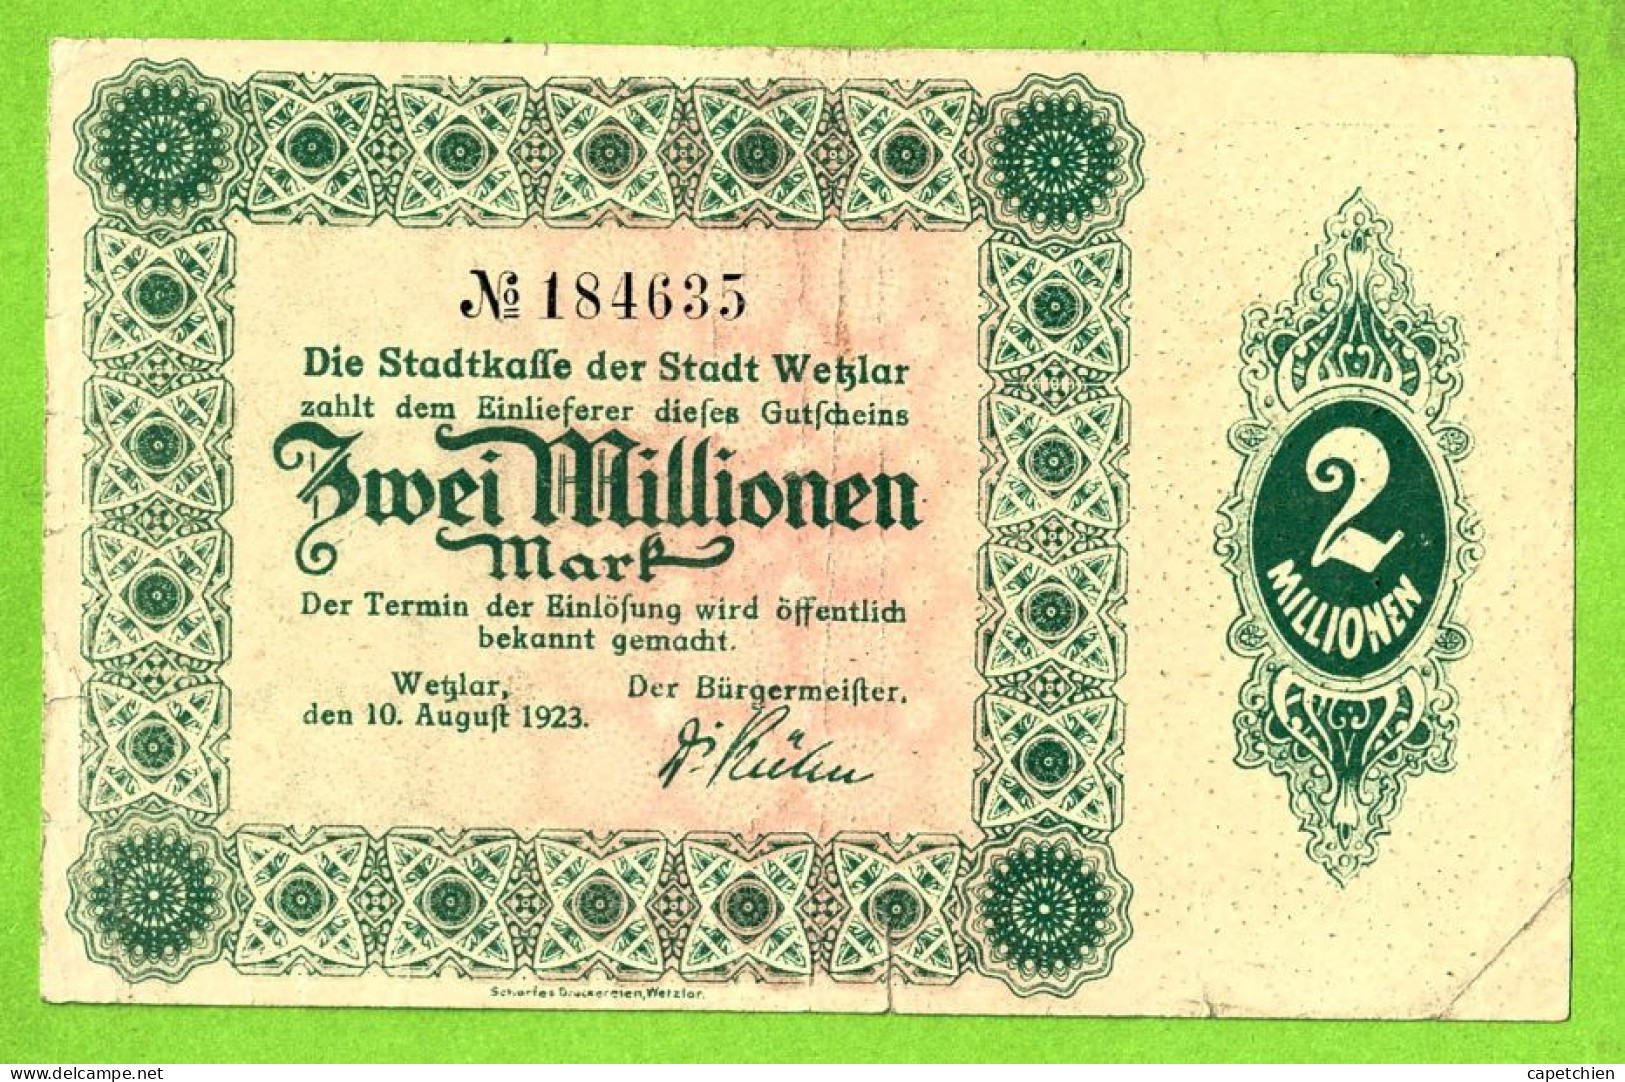 ALLEMAGNE / NOTGELD Der STADT WETZLAR / ZWEI MILLIONEN  MARK /  N° 184635 / 10 AOÛT 1923 - [11] Local Banknote Issues